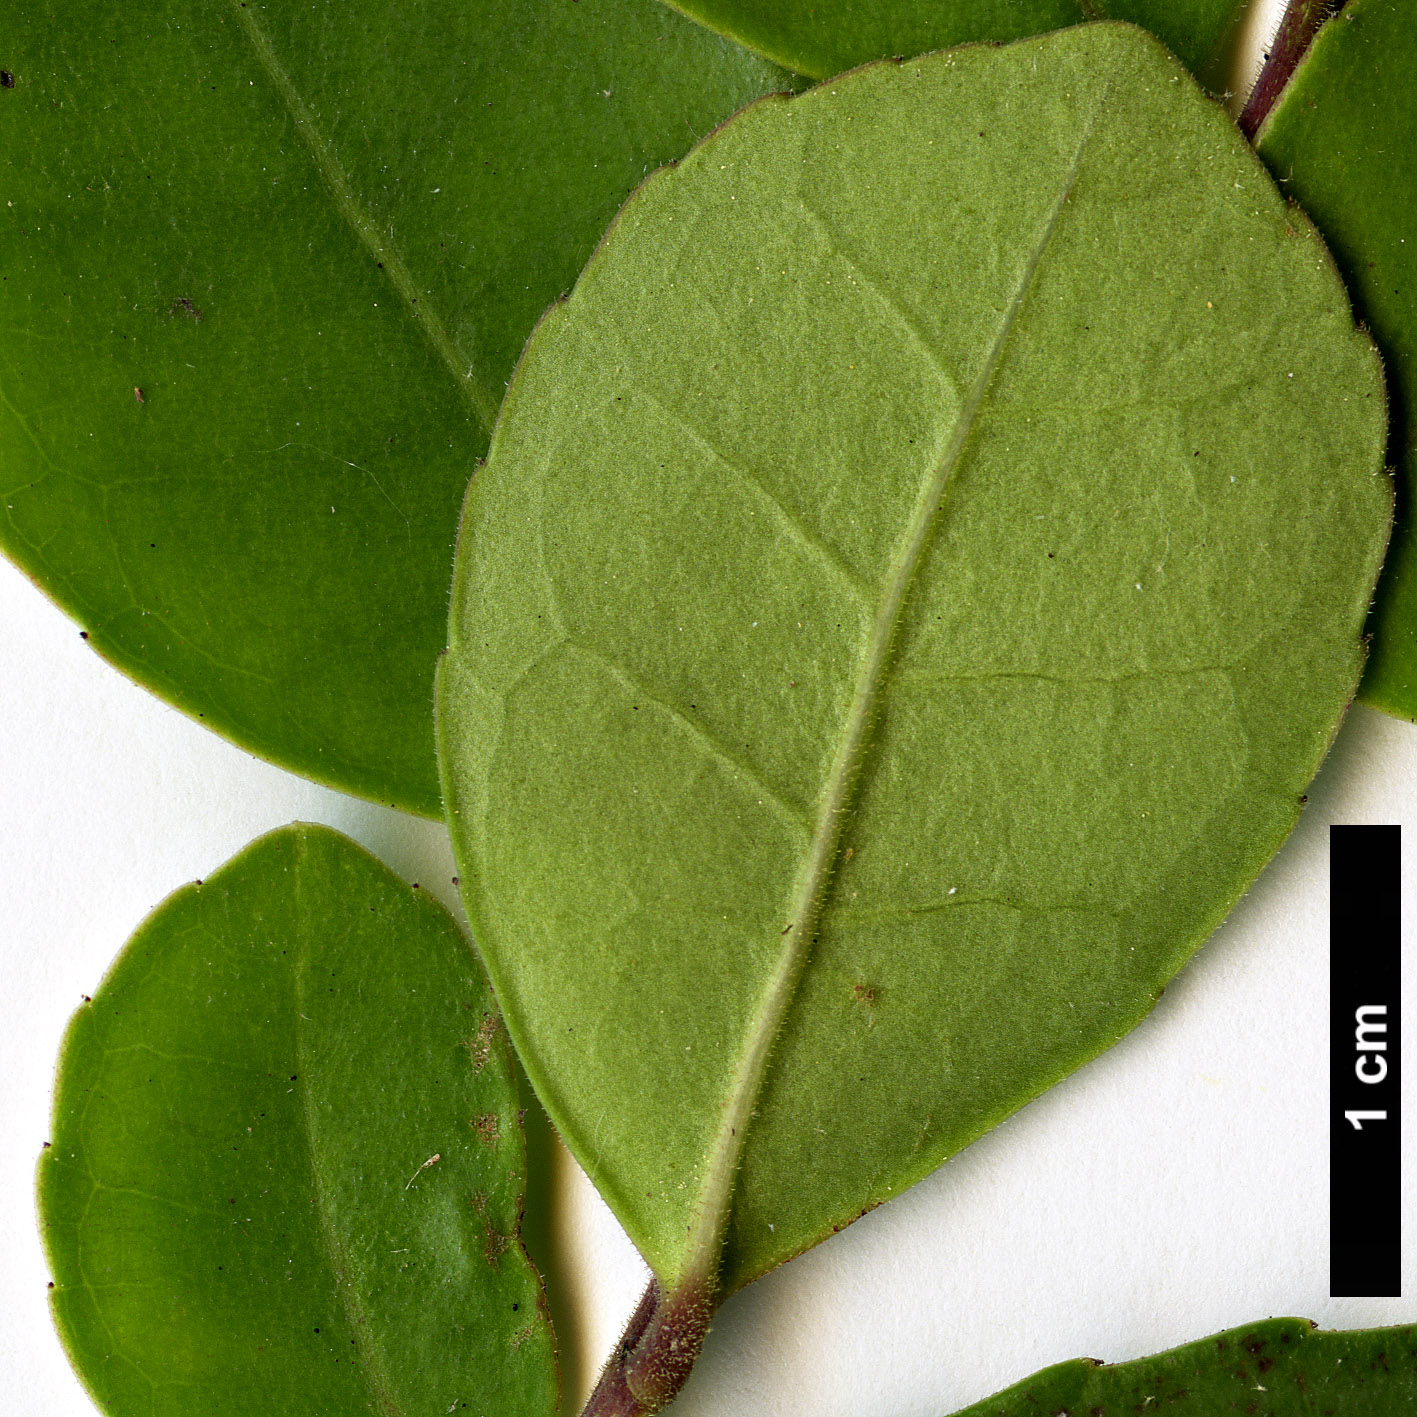 High resolution image: Family: Aquifoliaceae - Genus: Ilex - Taxon: discolor